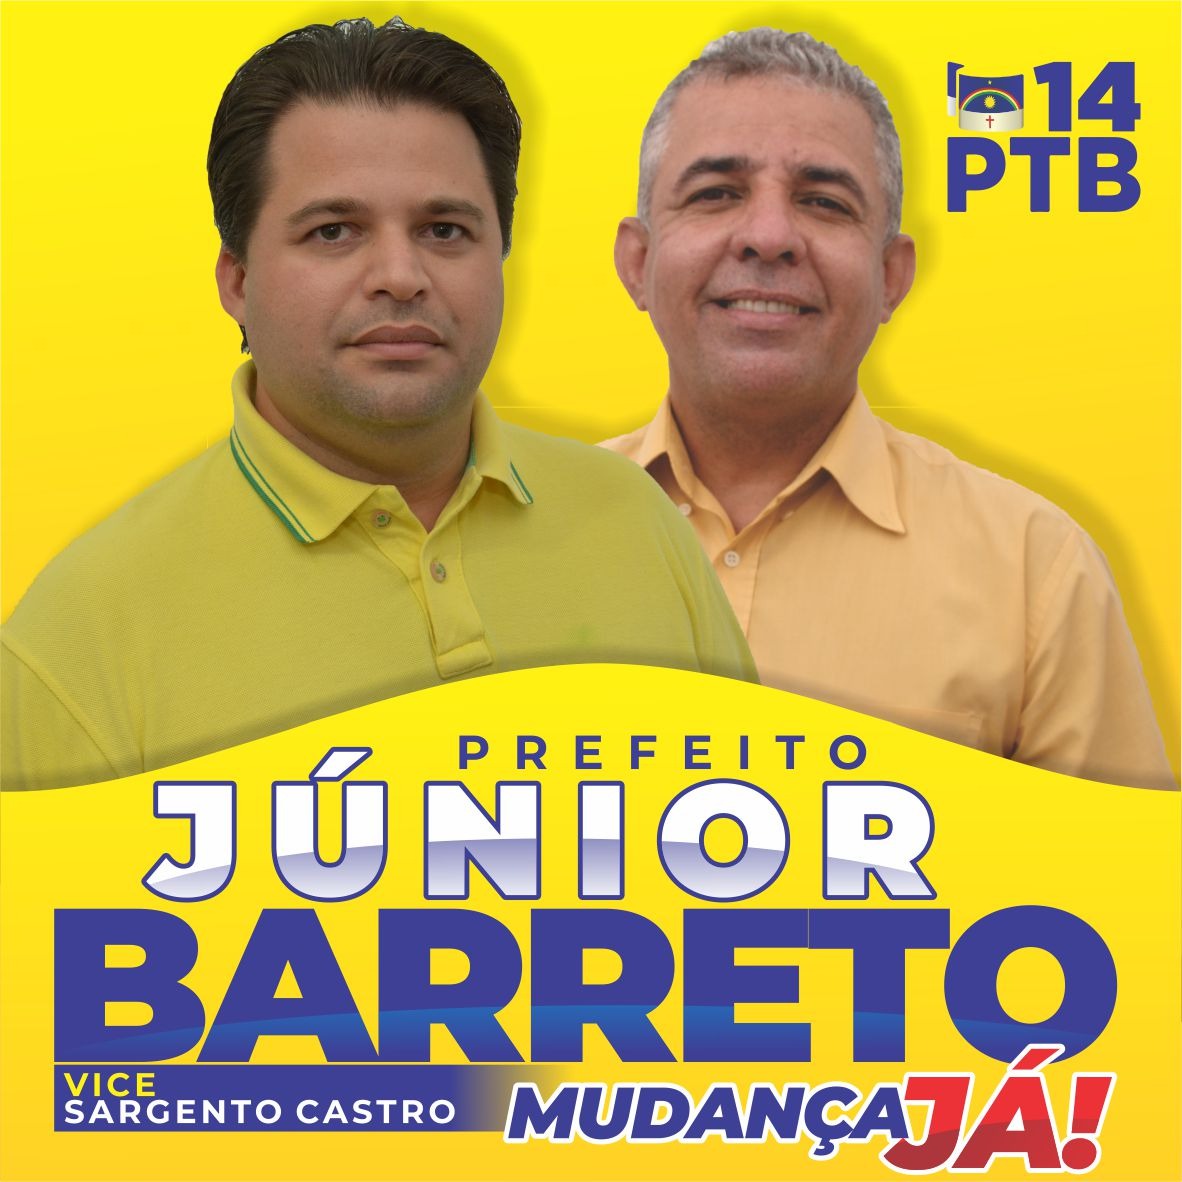 PTB homologa a Candidatura de Júnior Barreto com Sargento Castro na Vice